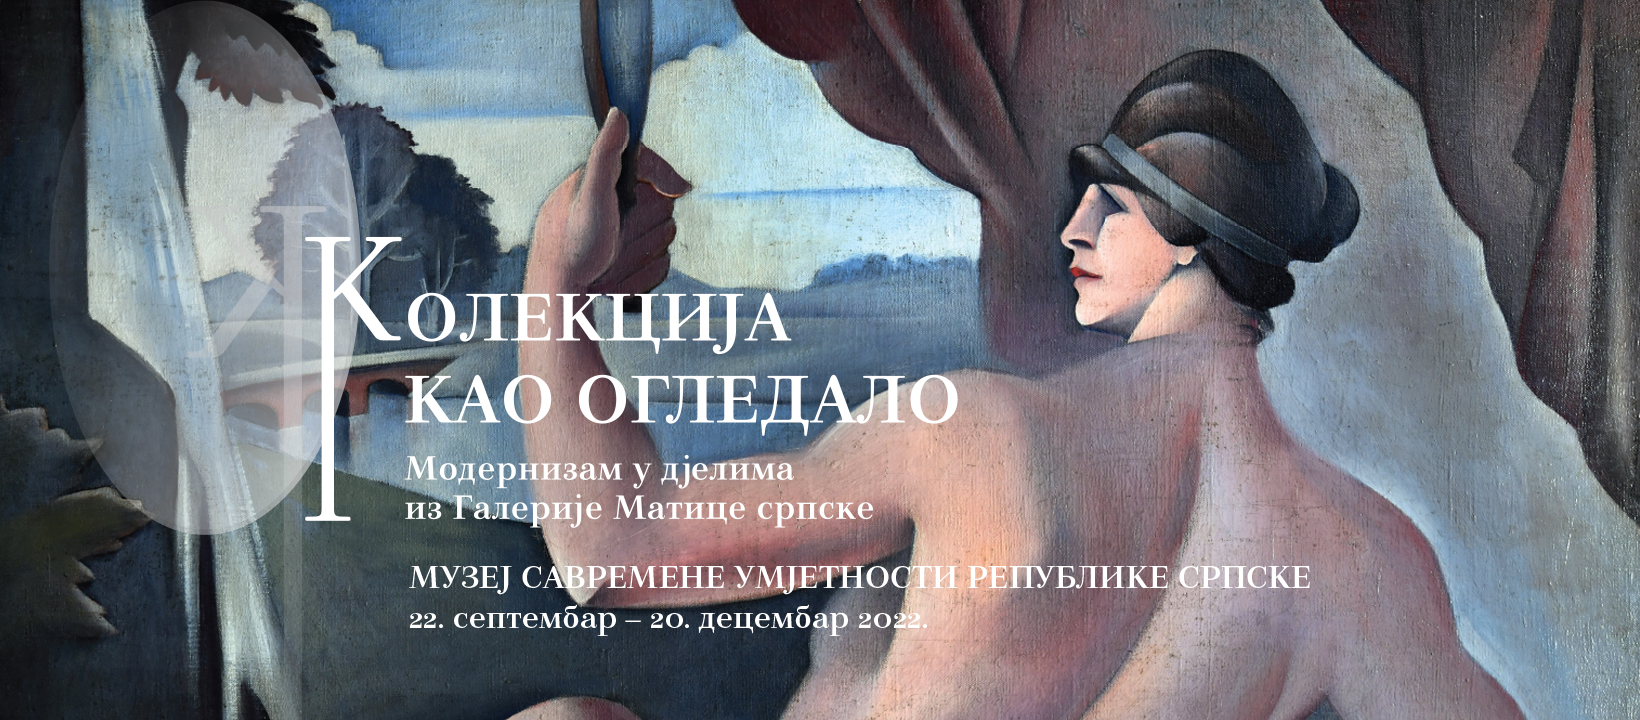 Позив на свечано отварање изложбе дјела из Галерије Матице српске 22. септембра